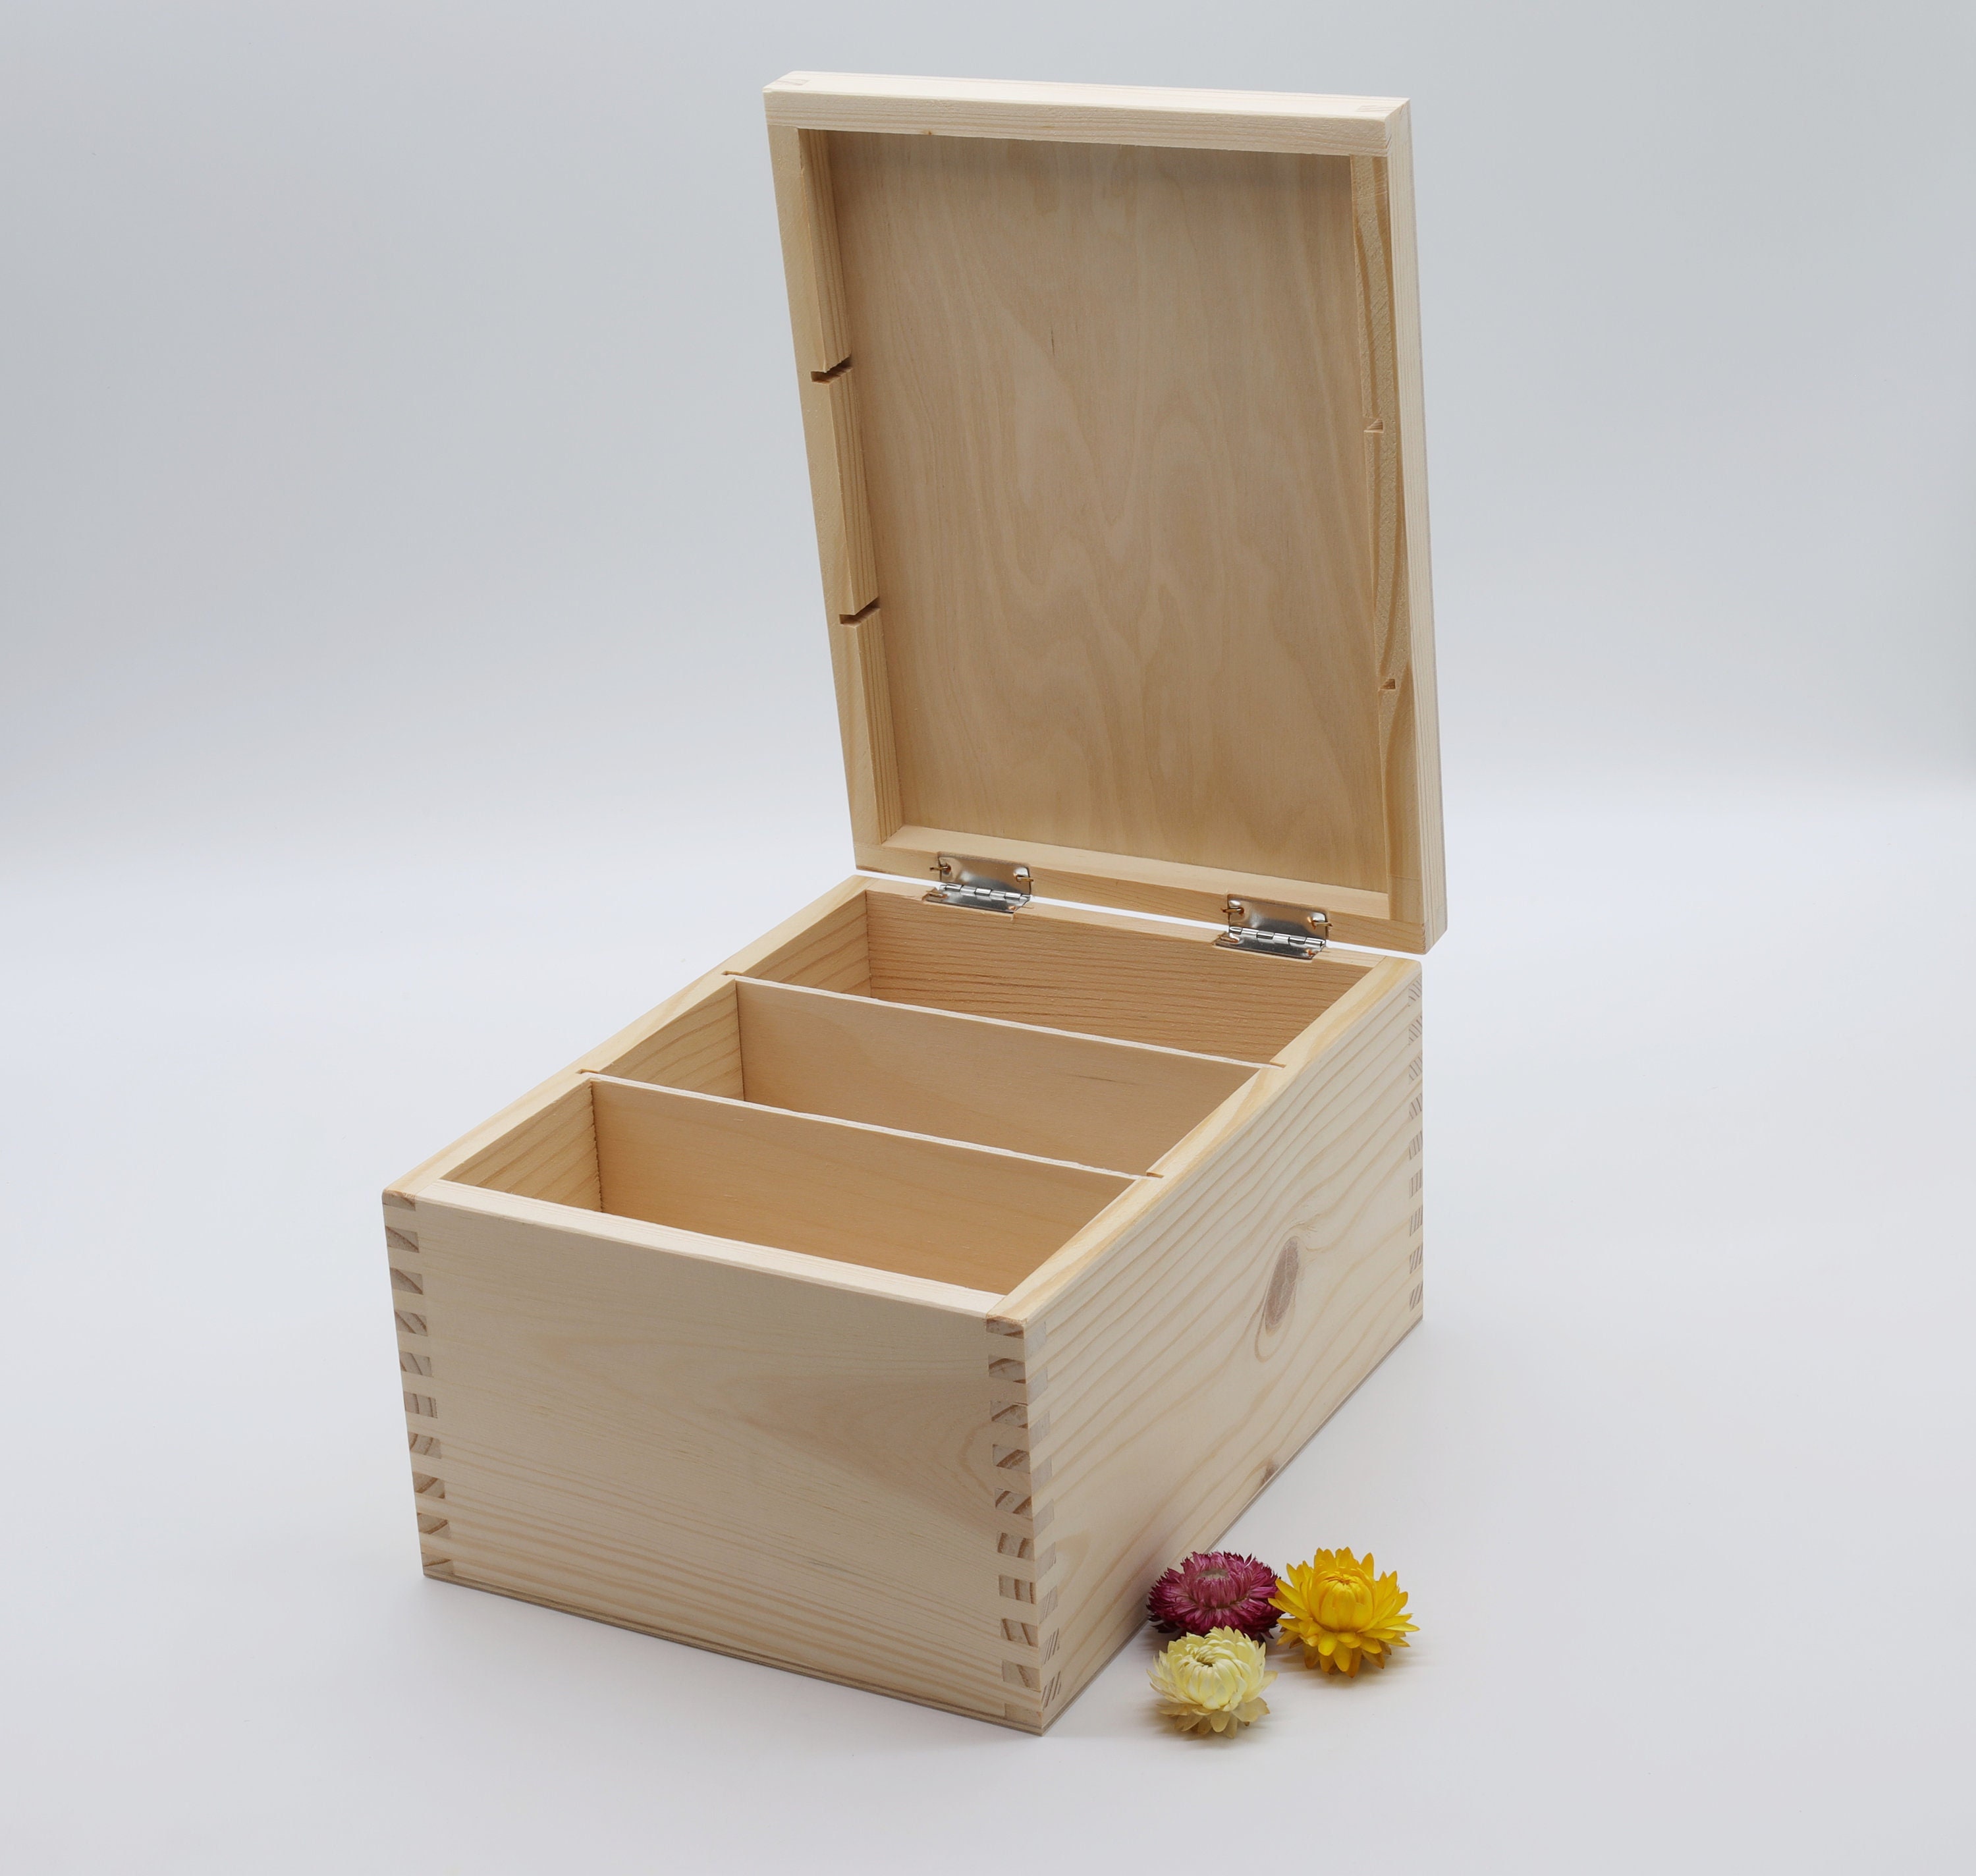 Caja de madera para decorar 24 compartimentos